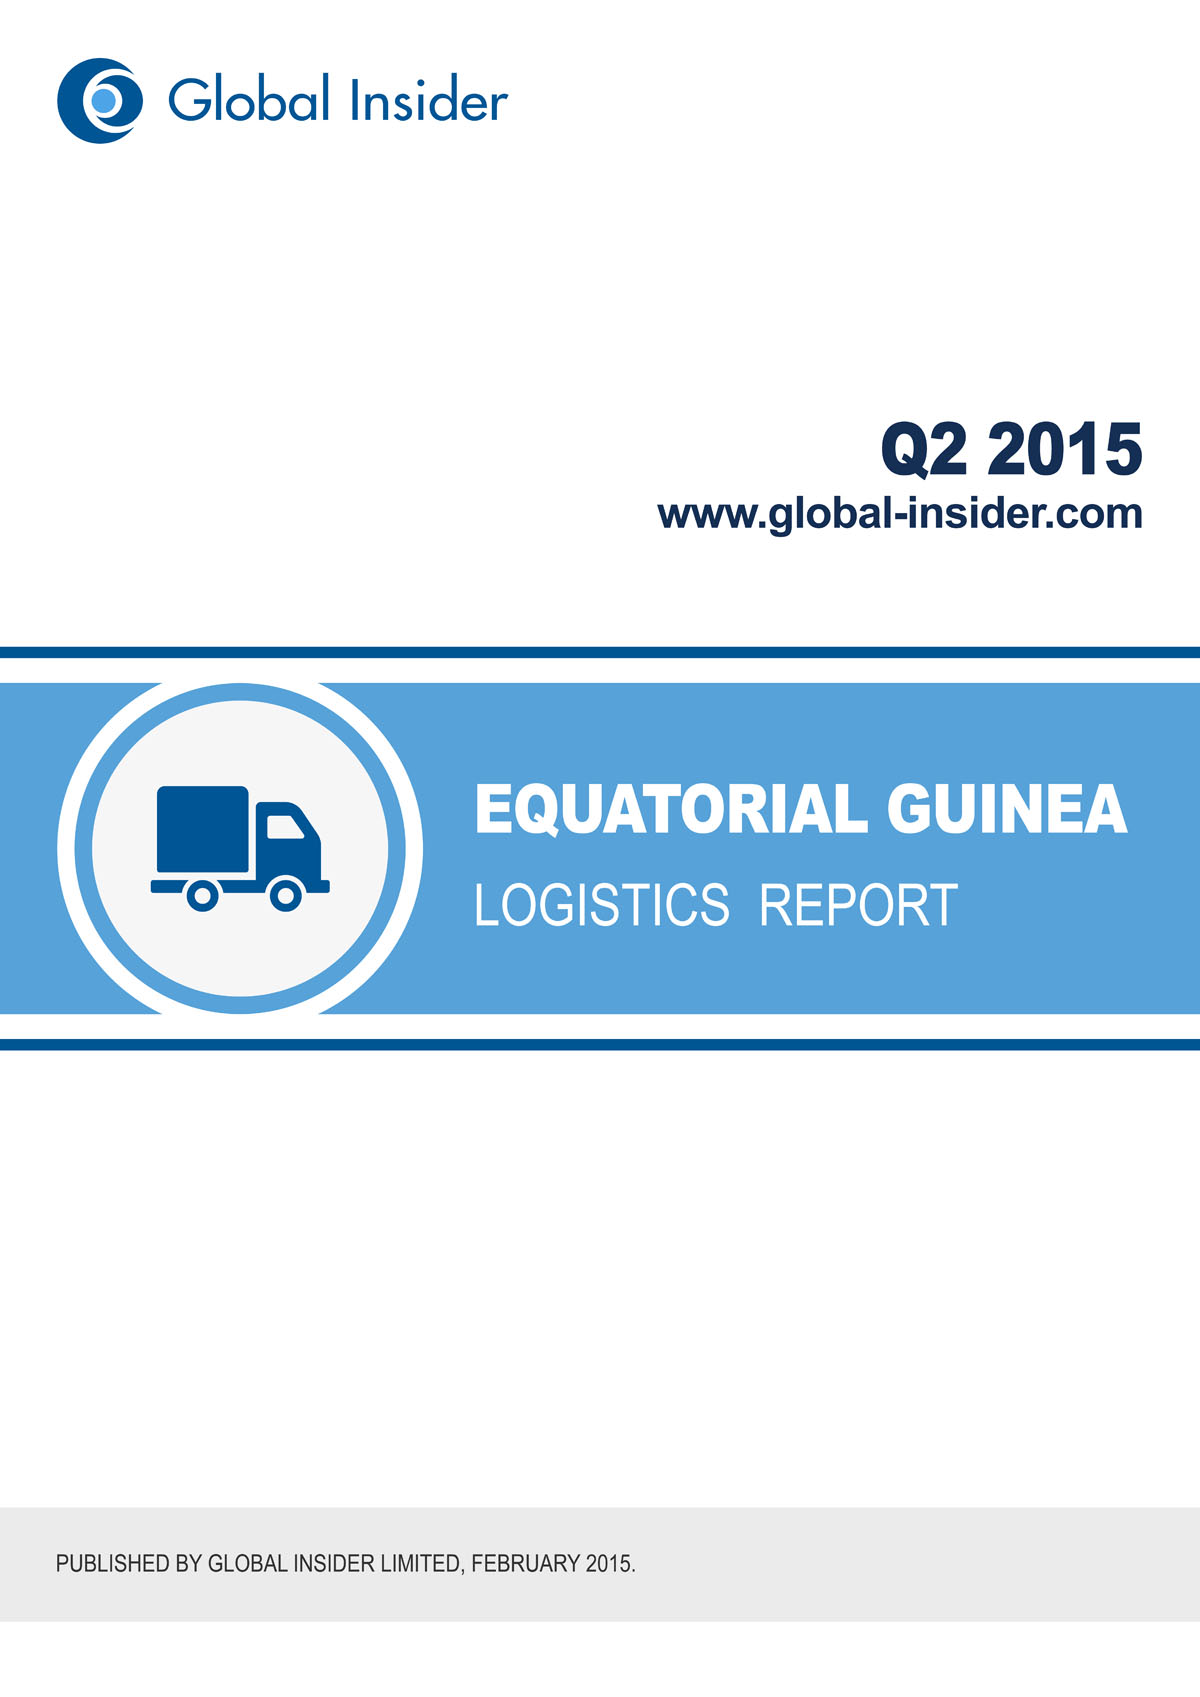 Equatorial Guinea Logistics Report